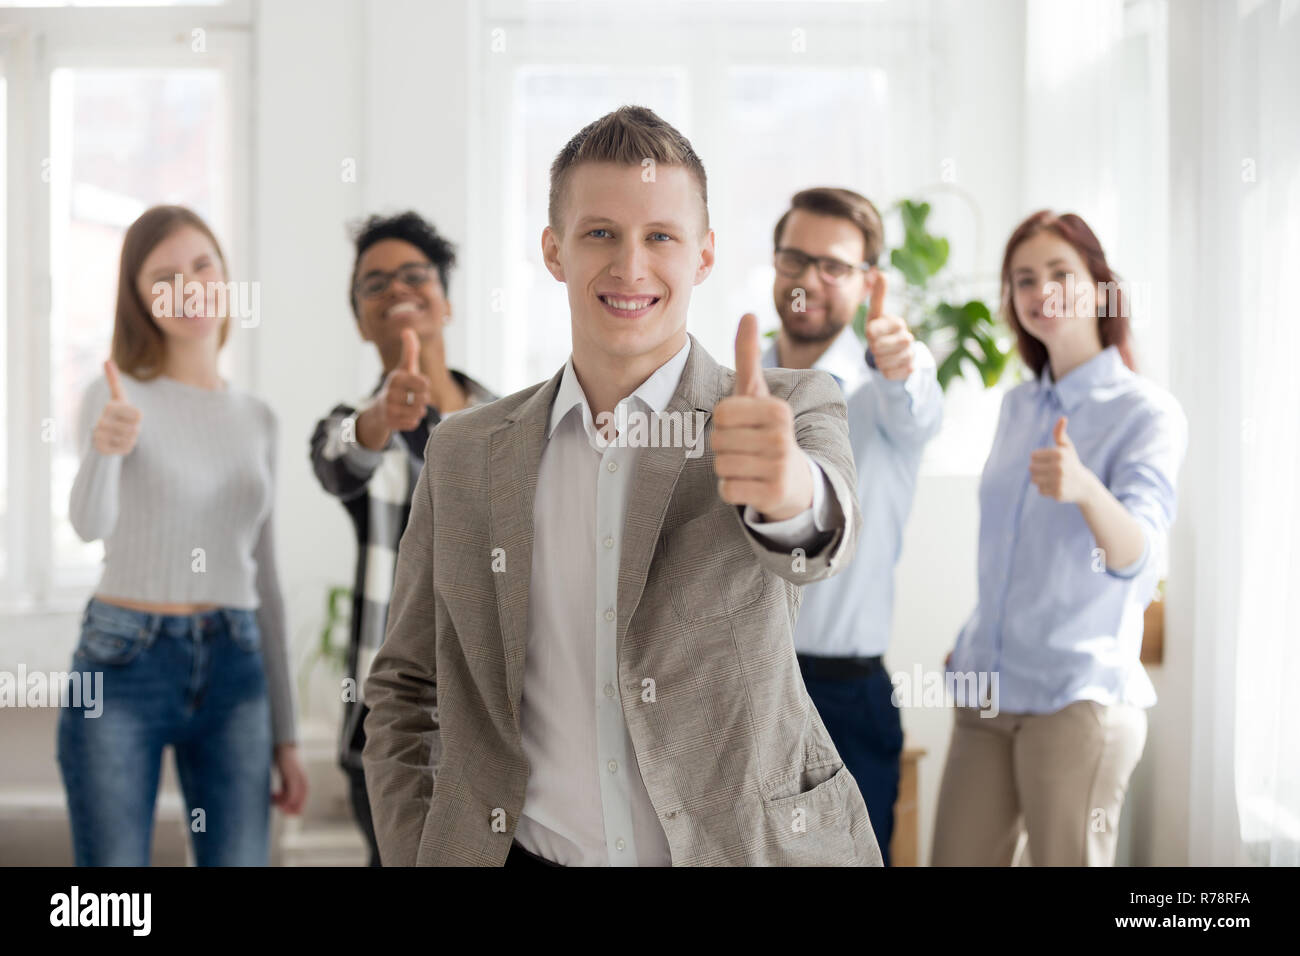 Lächelnd männliche Mitarbeiter mit vielfältigen Team zeigen Daumen hoch Stockfoto